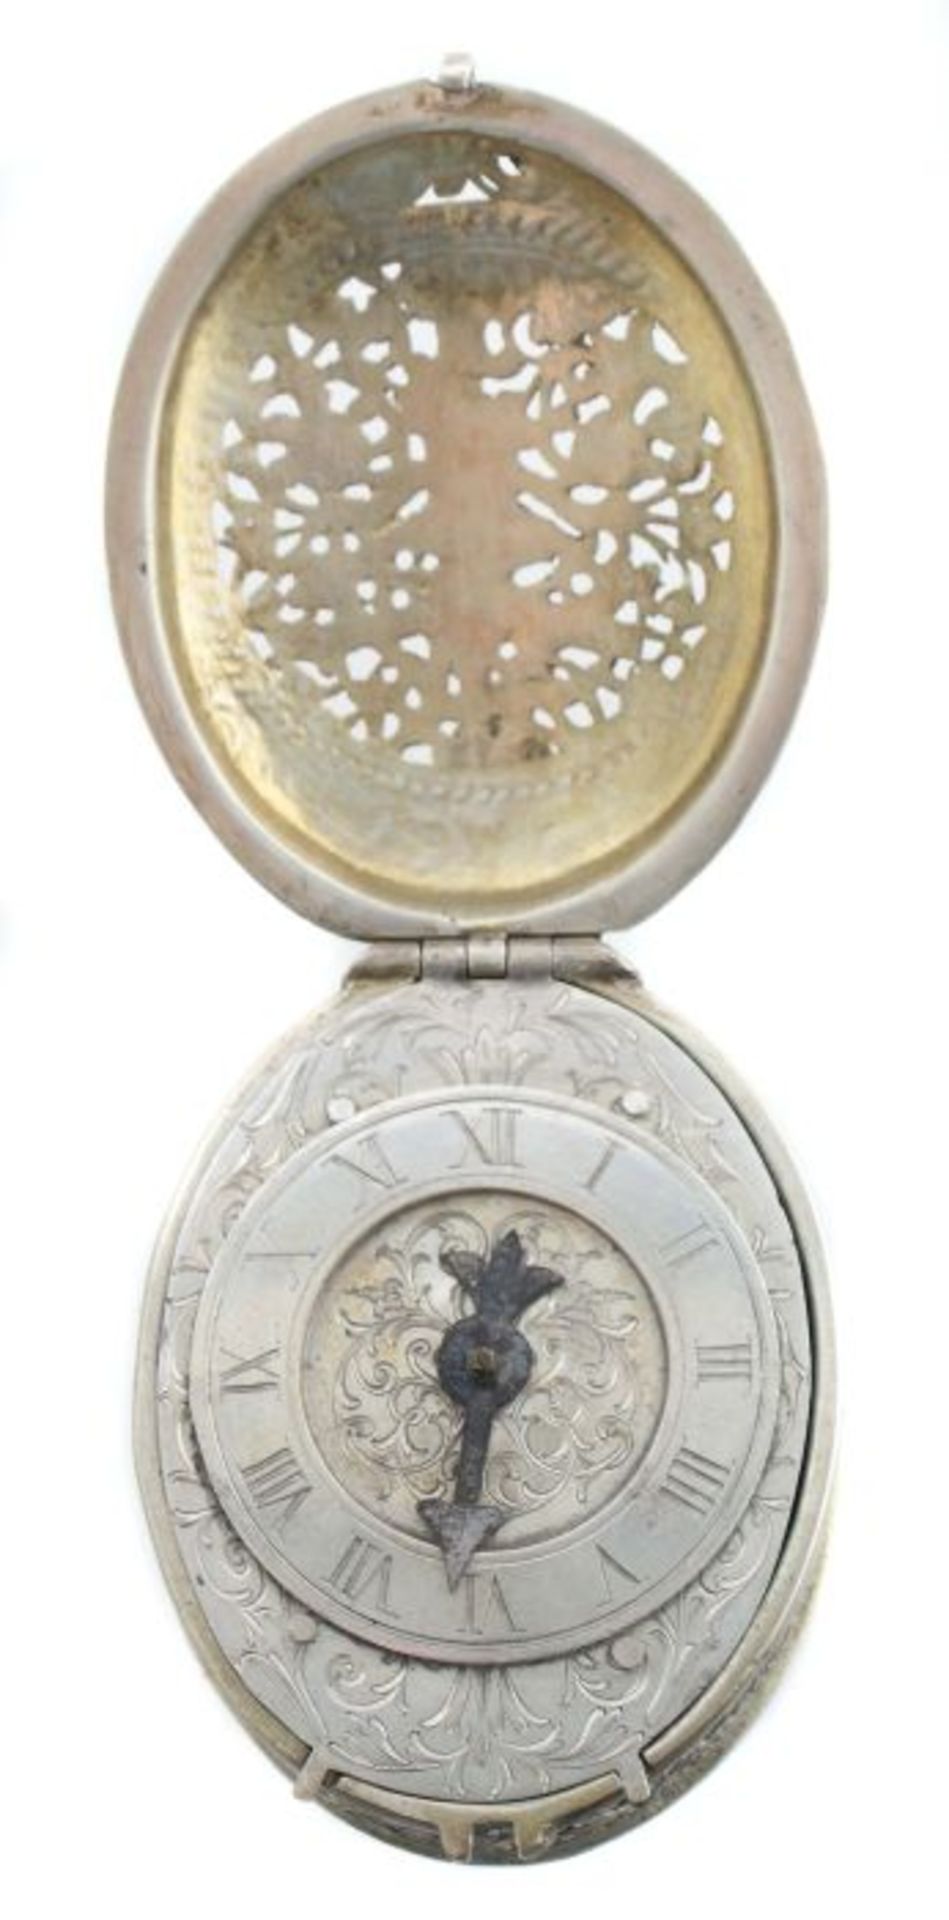 Halsuhr im Renaissance-Stil Süddeutsch, Silber/part. vergoldet, ovale Halsuhr, kreisrundes - Bild 2 aus 5